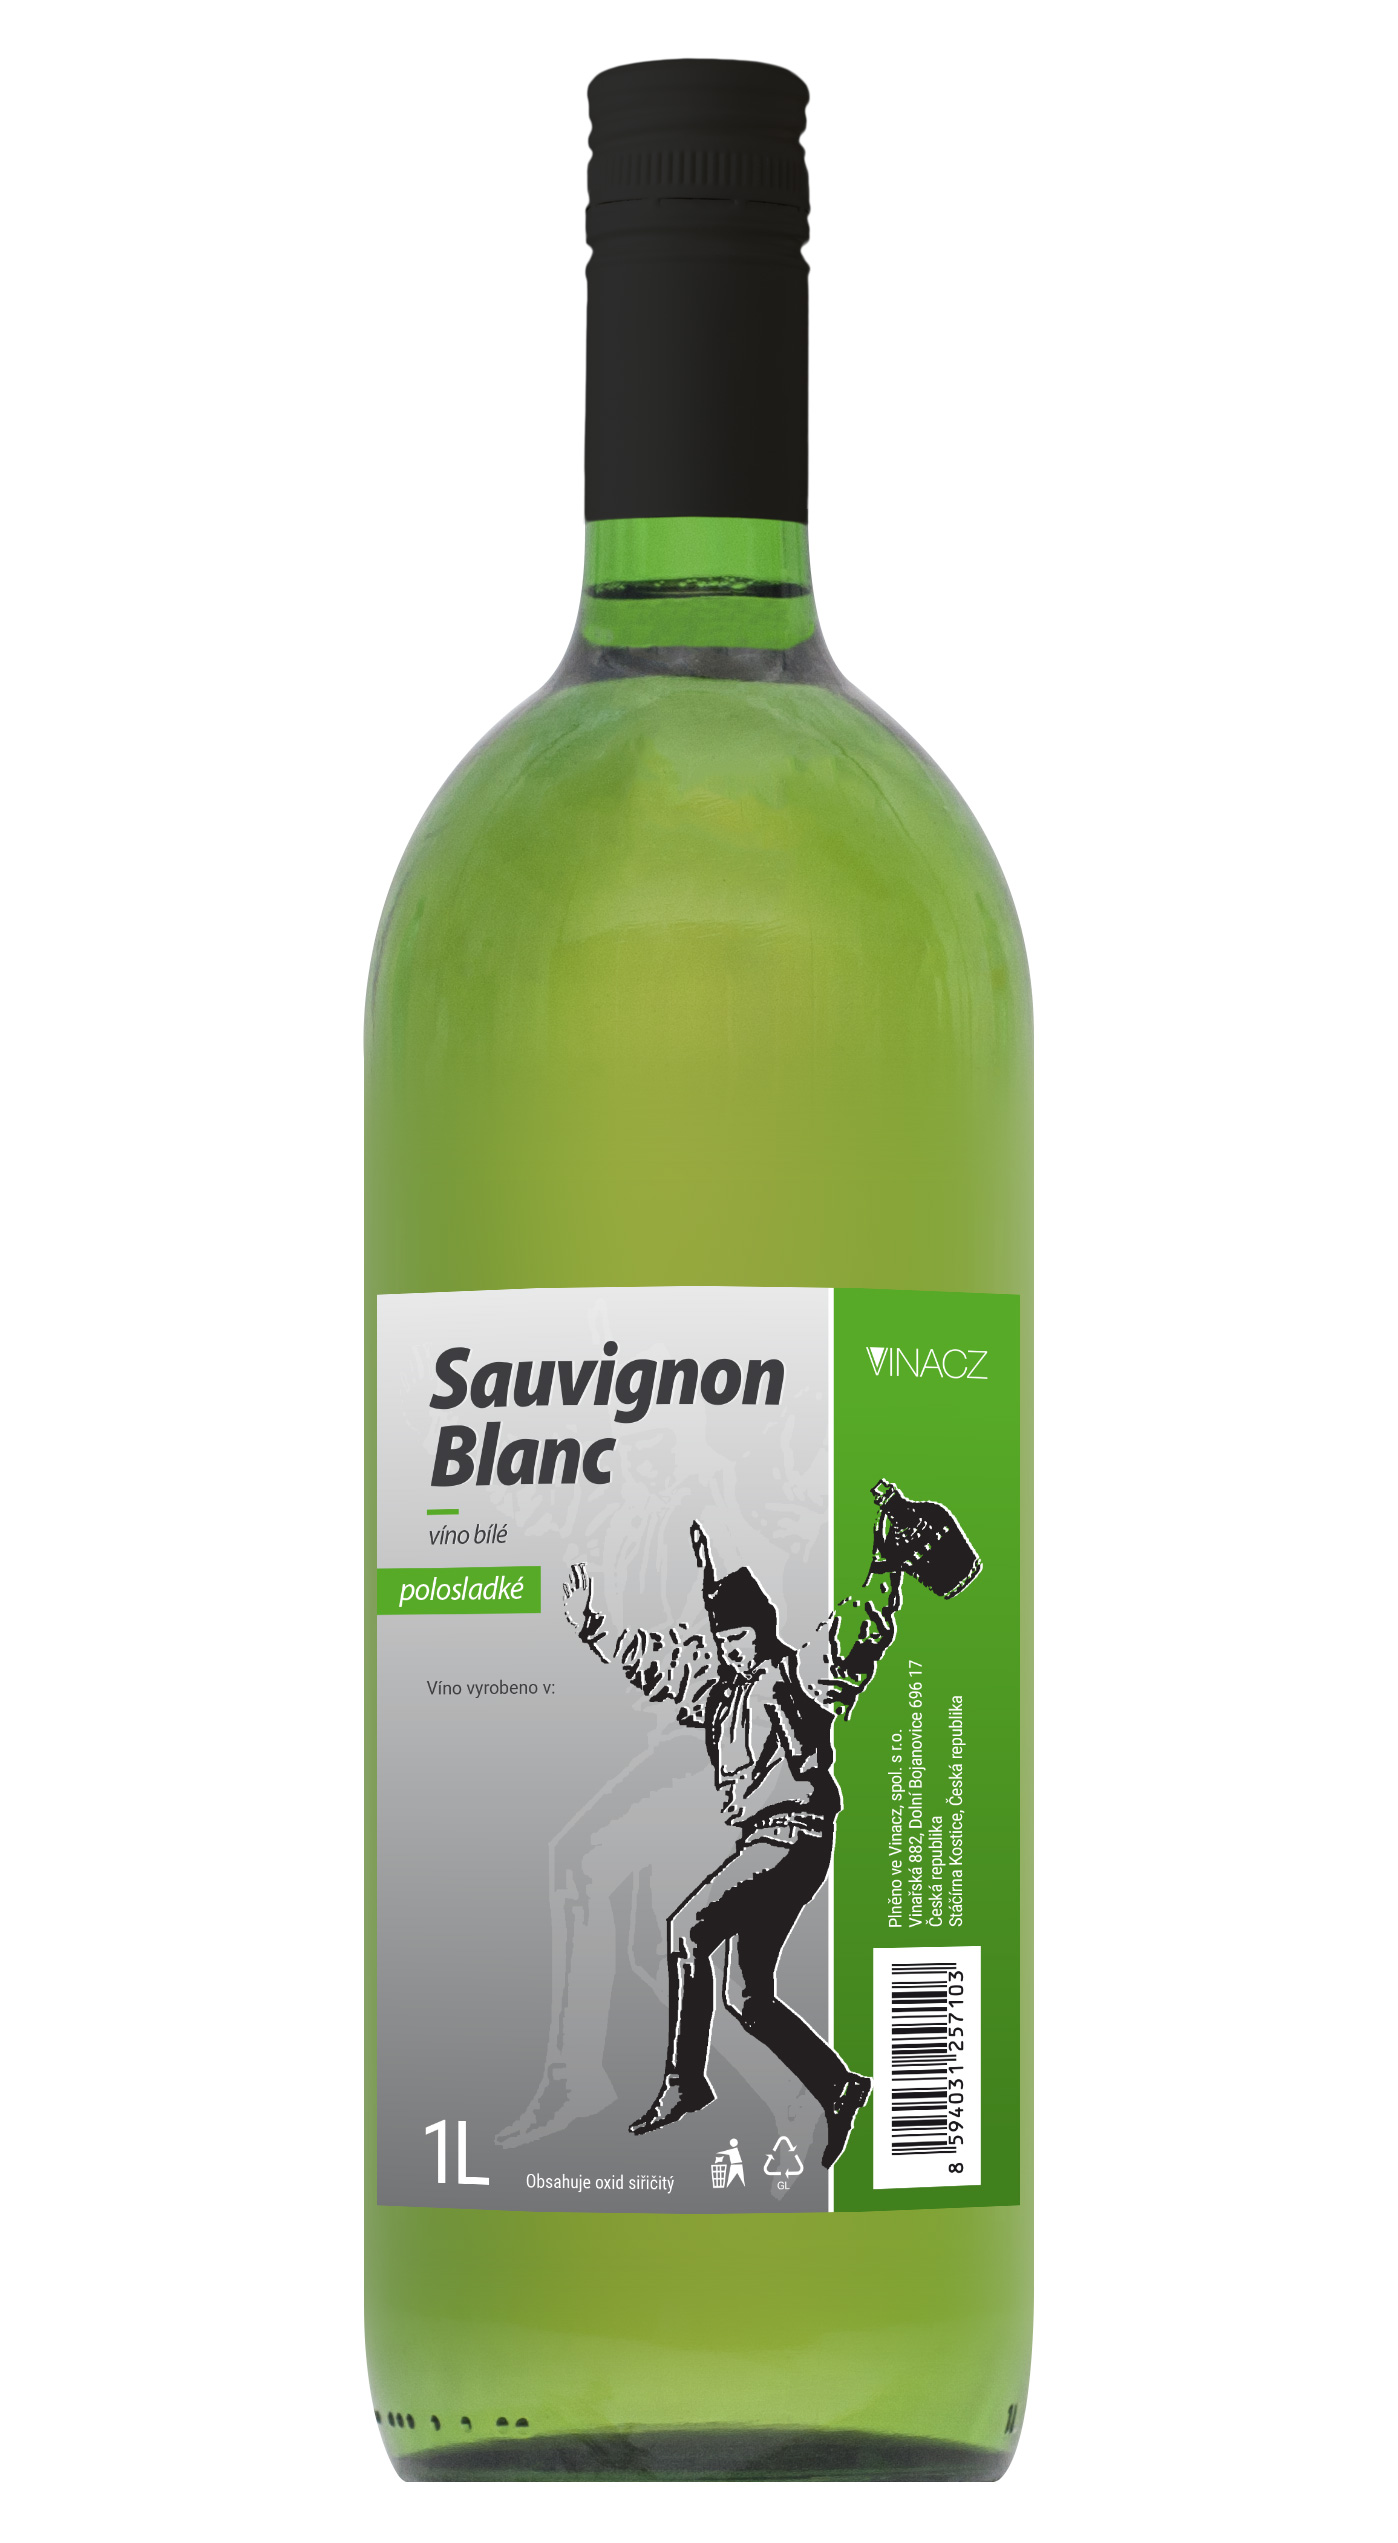 Sauvignon Blanc, polosladké